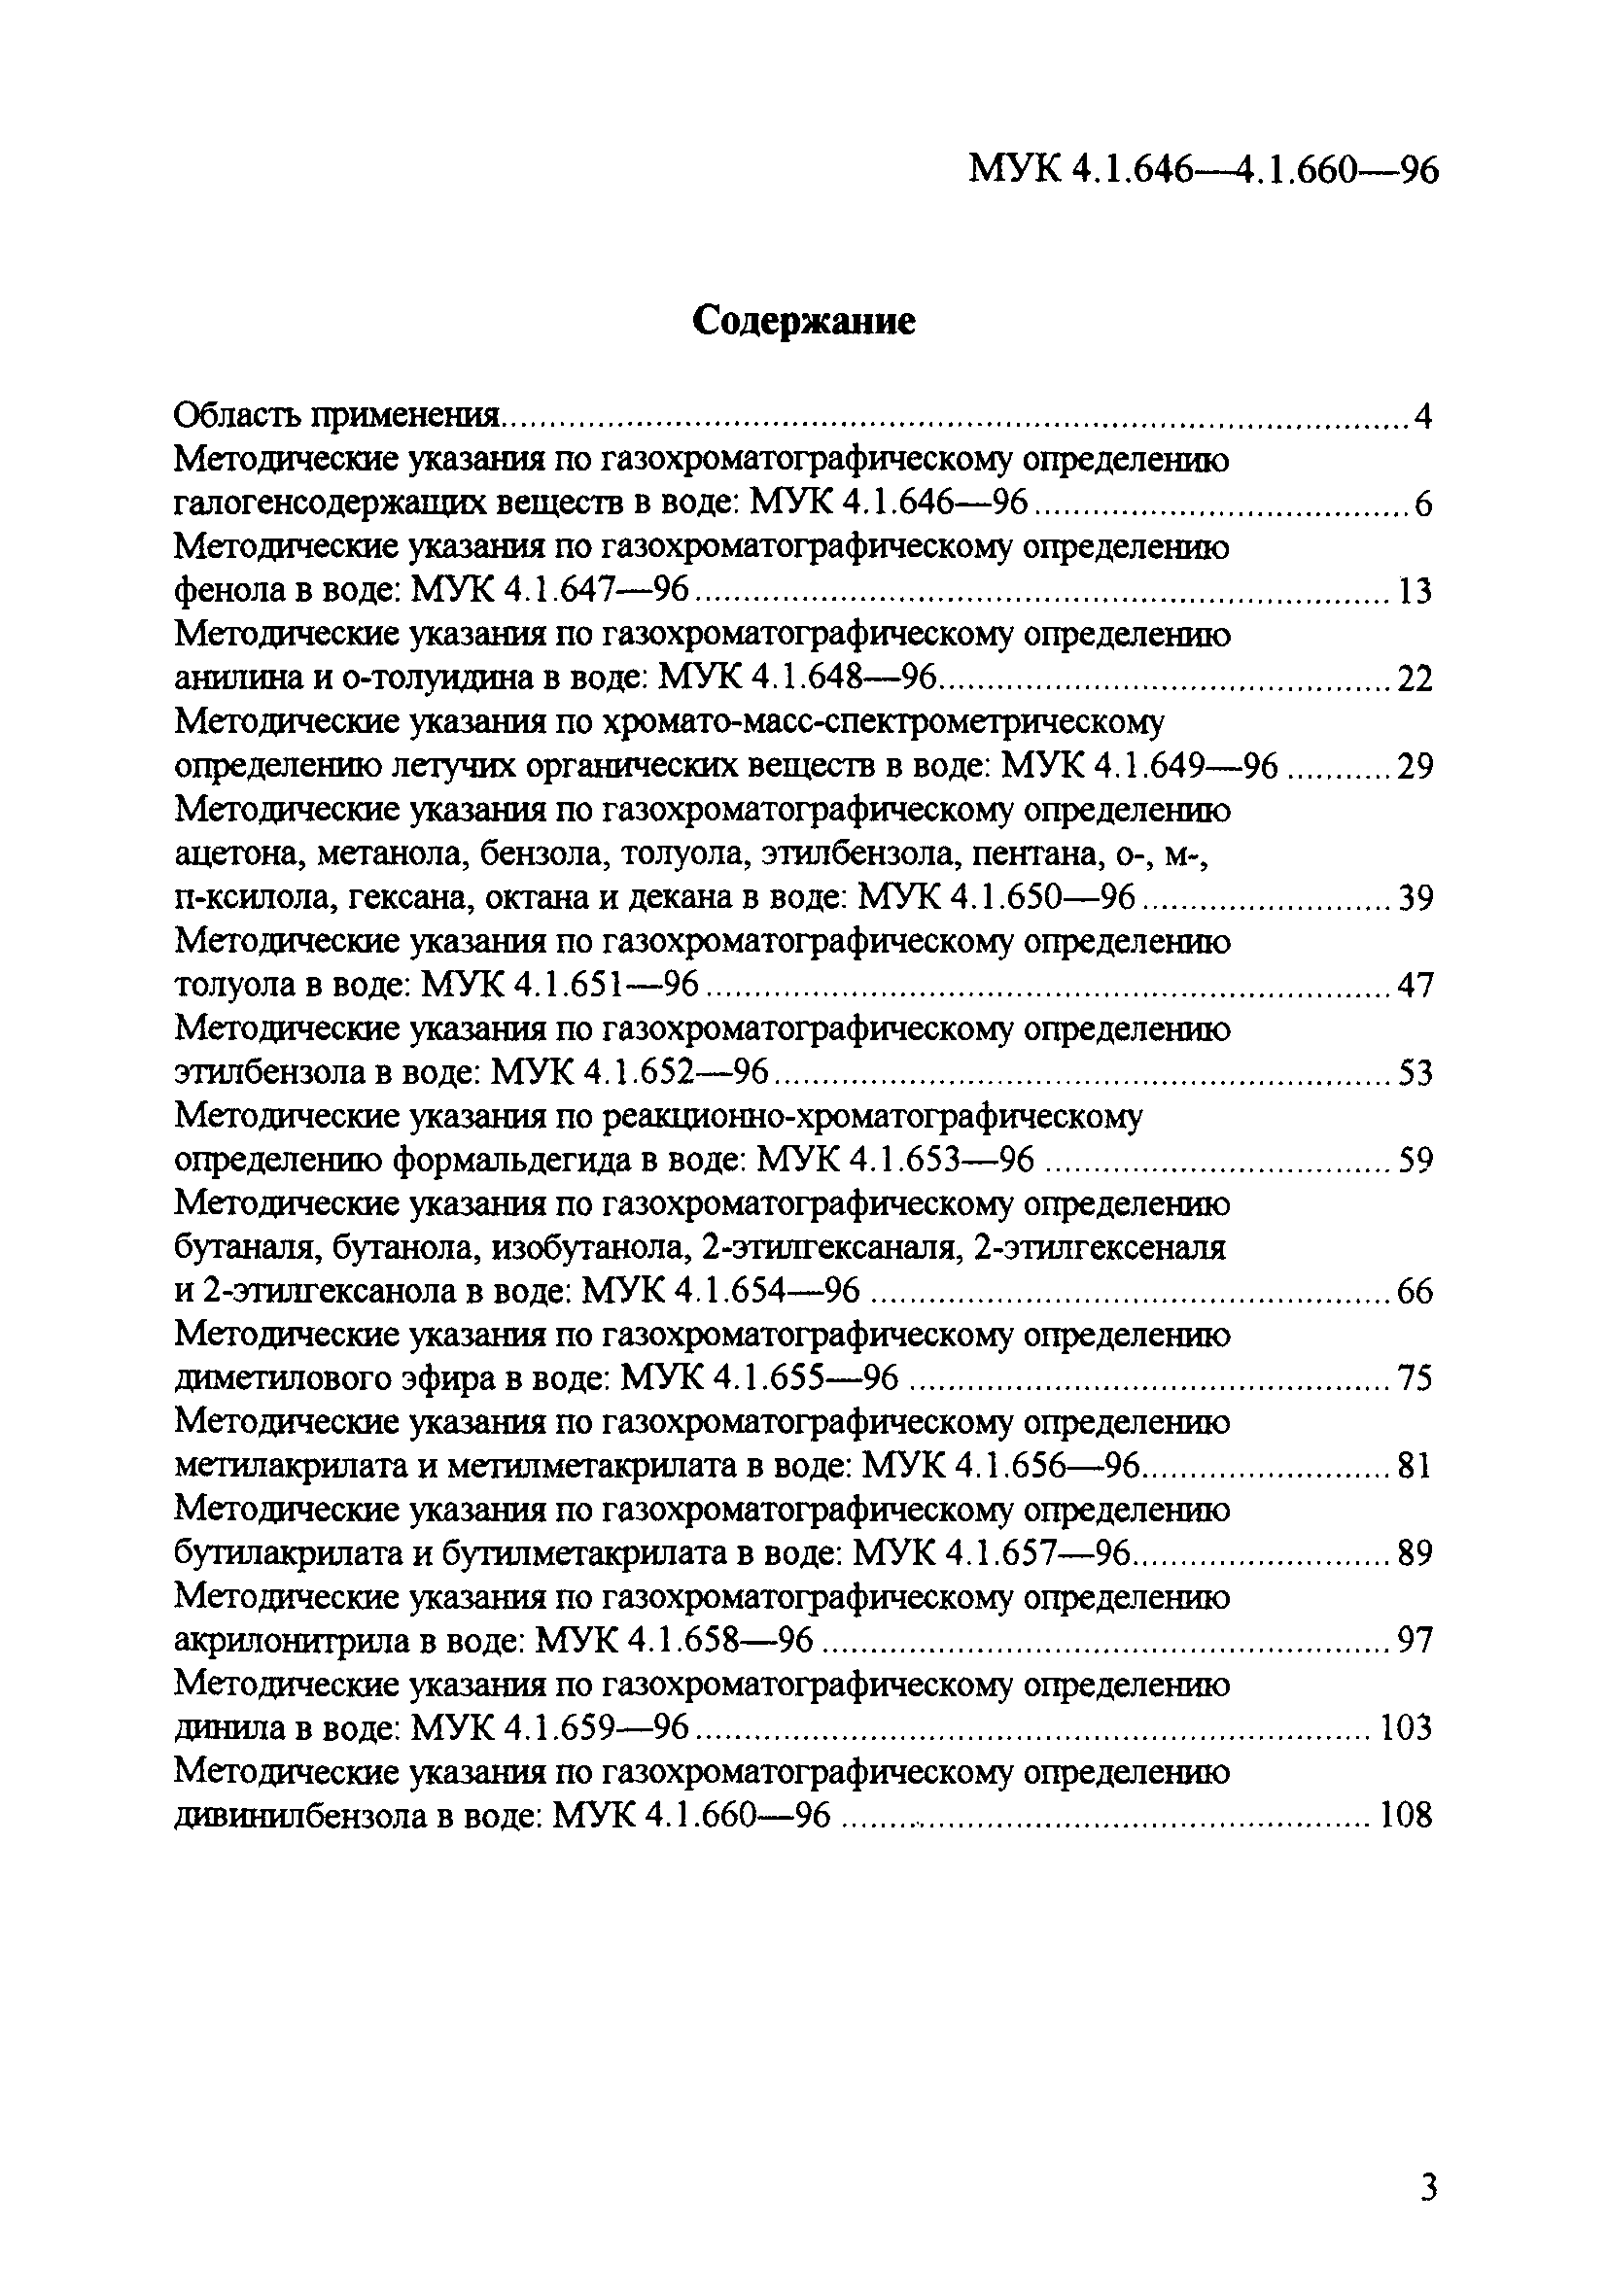 МУК 4.1.660-96